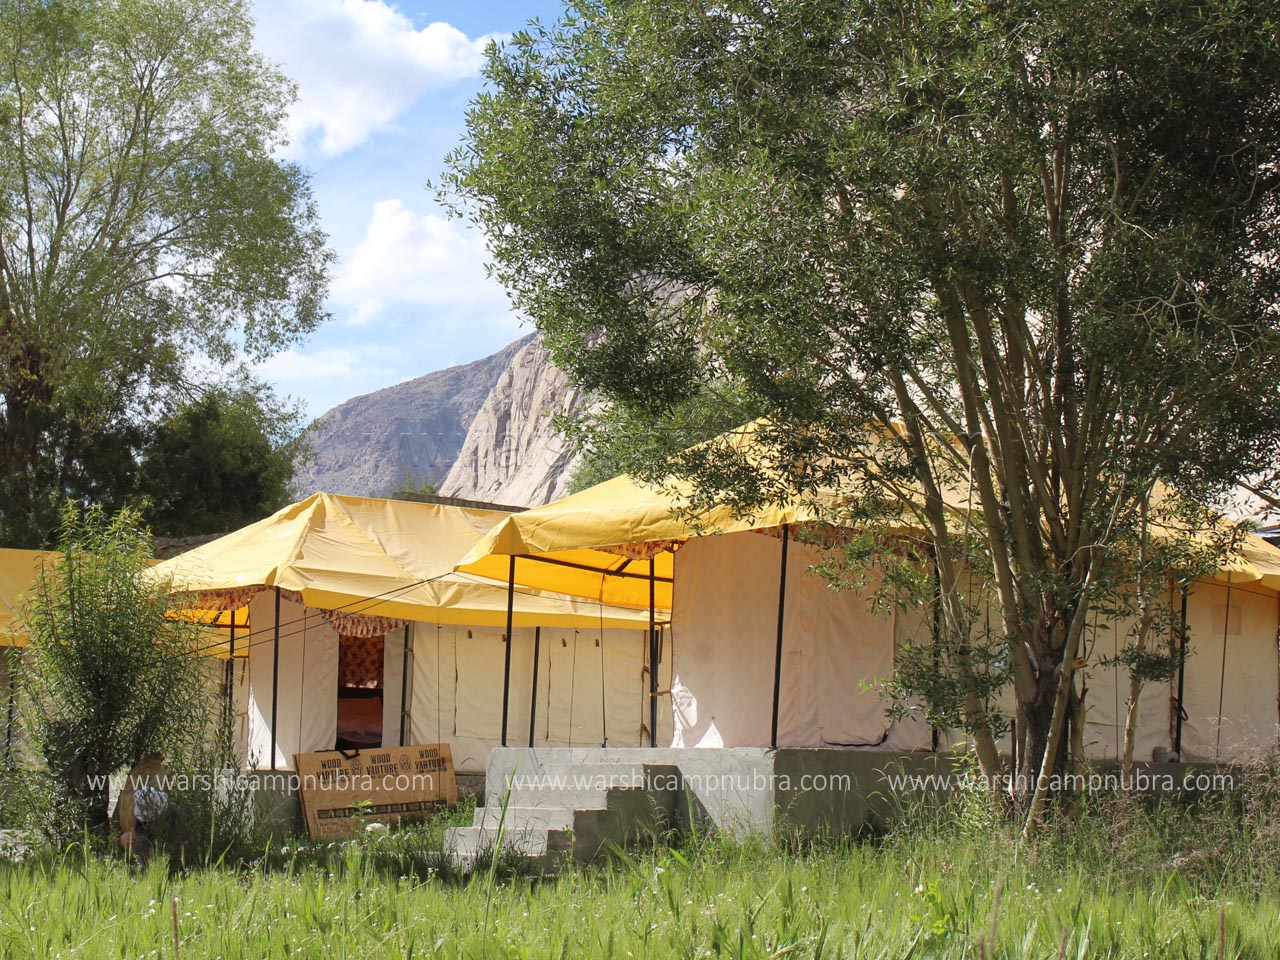 Warshi Camp Nubra Valley Ladakh